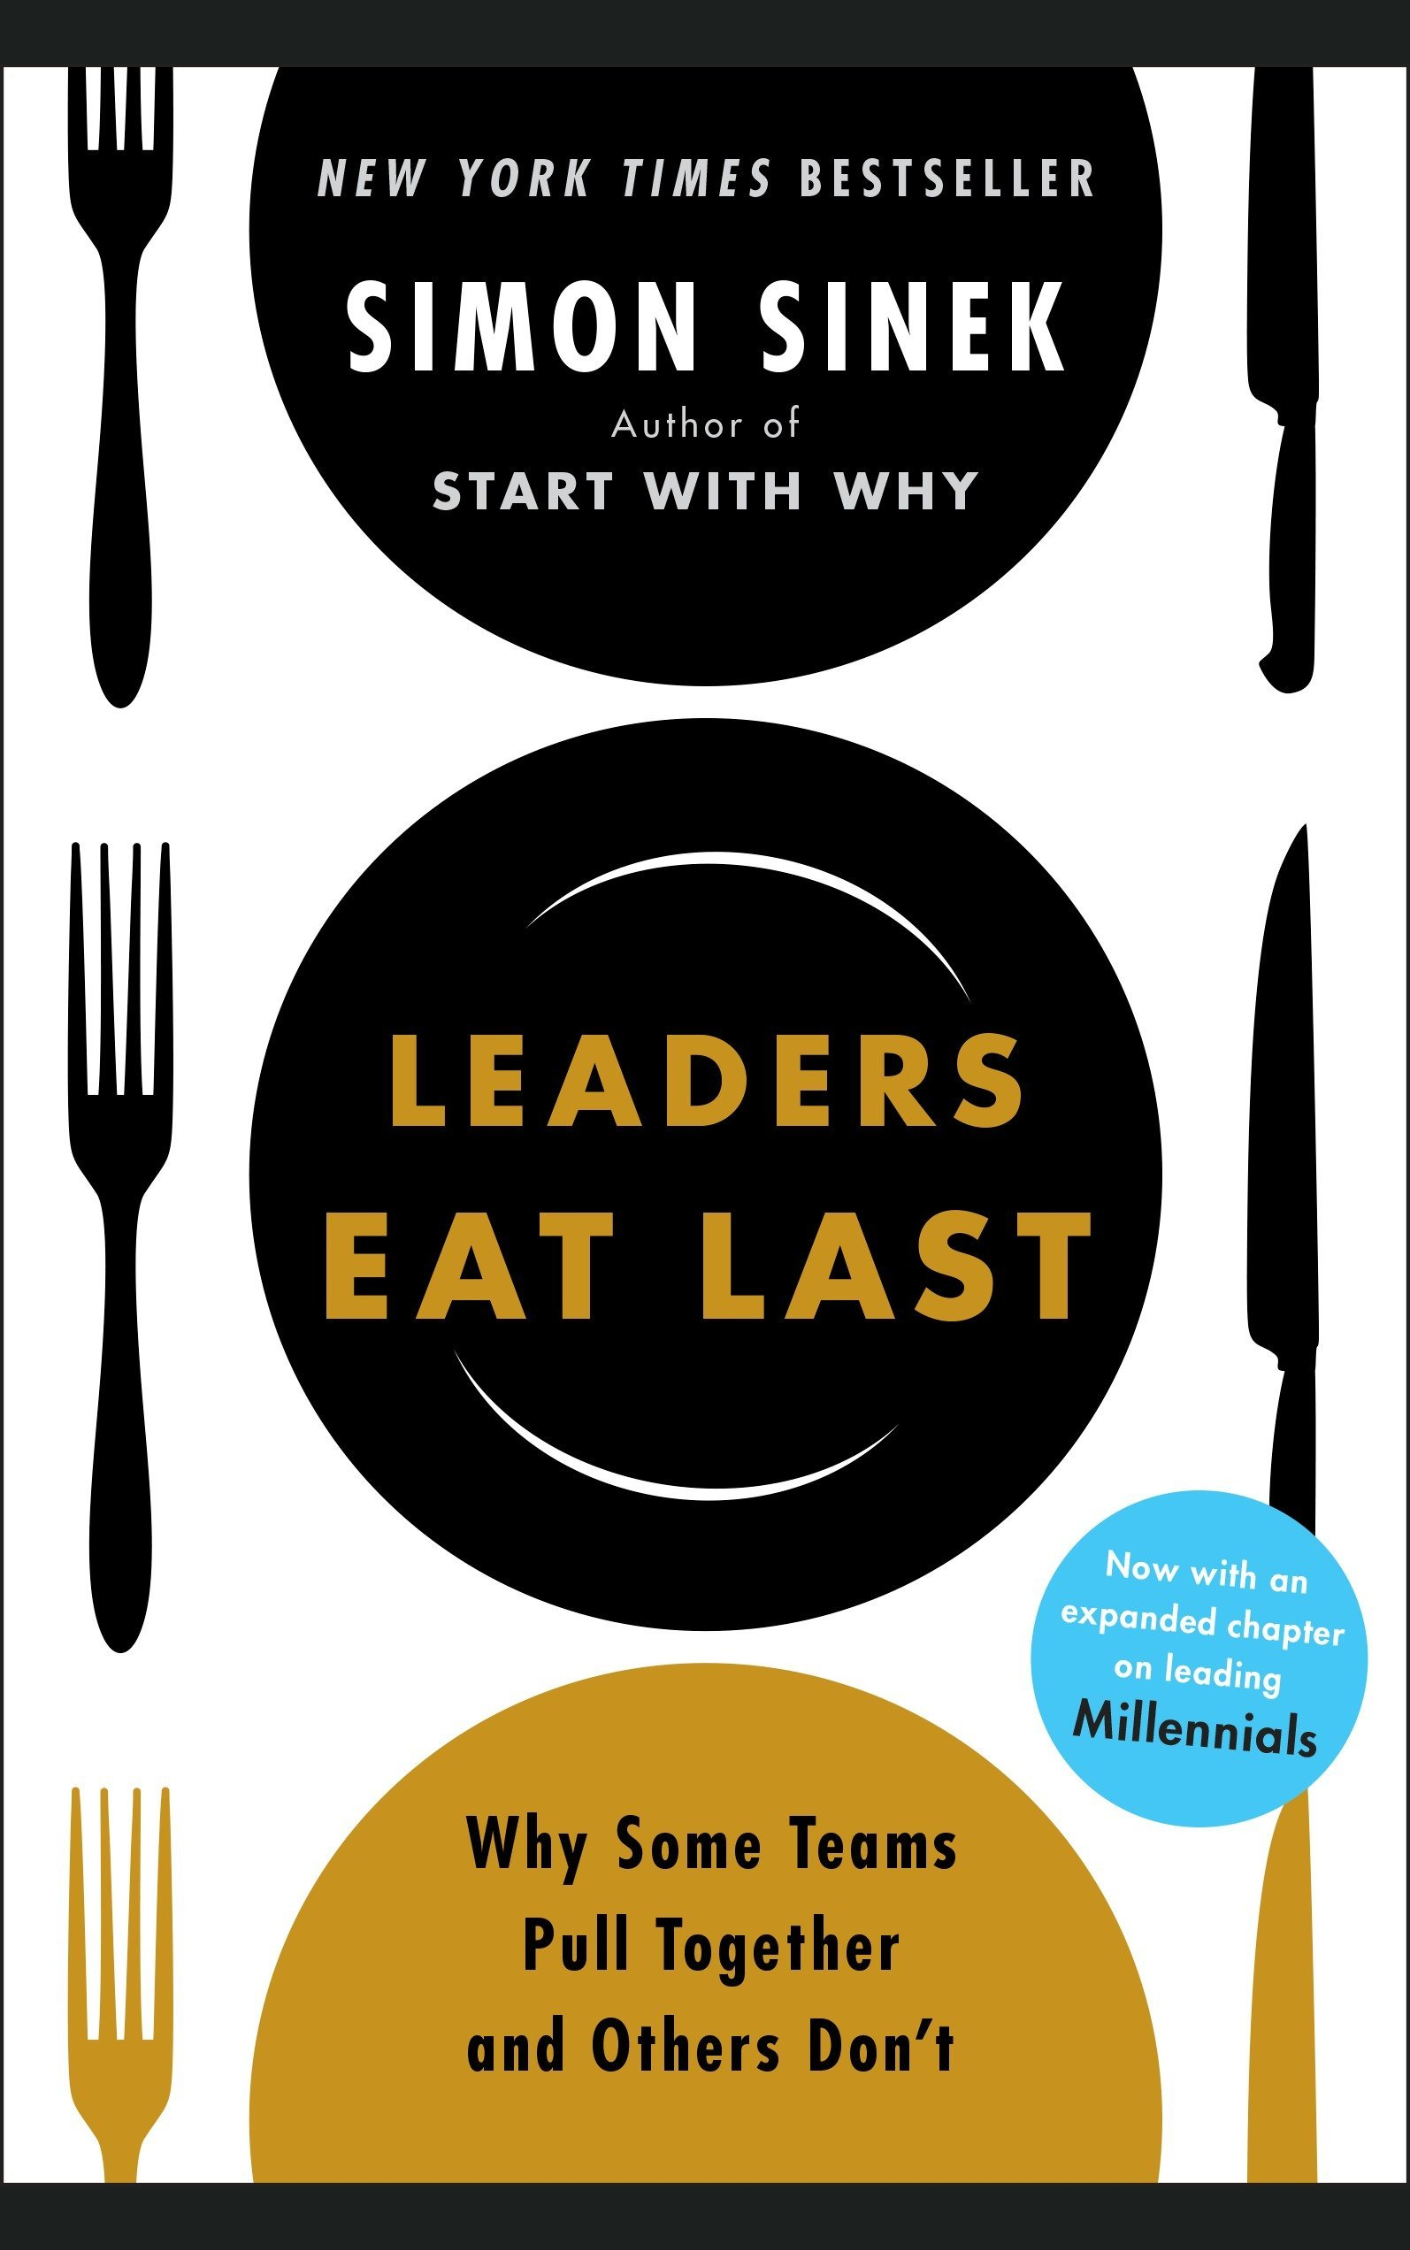 LEADERS EAT LAST by SIMON SINEK